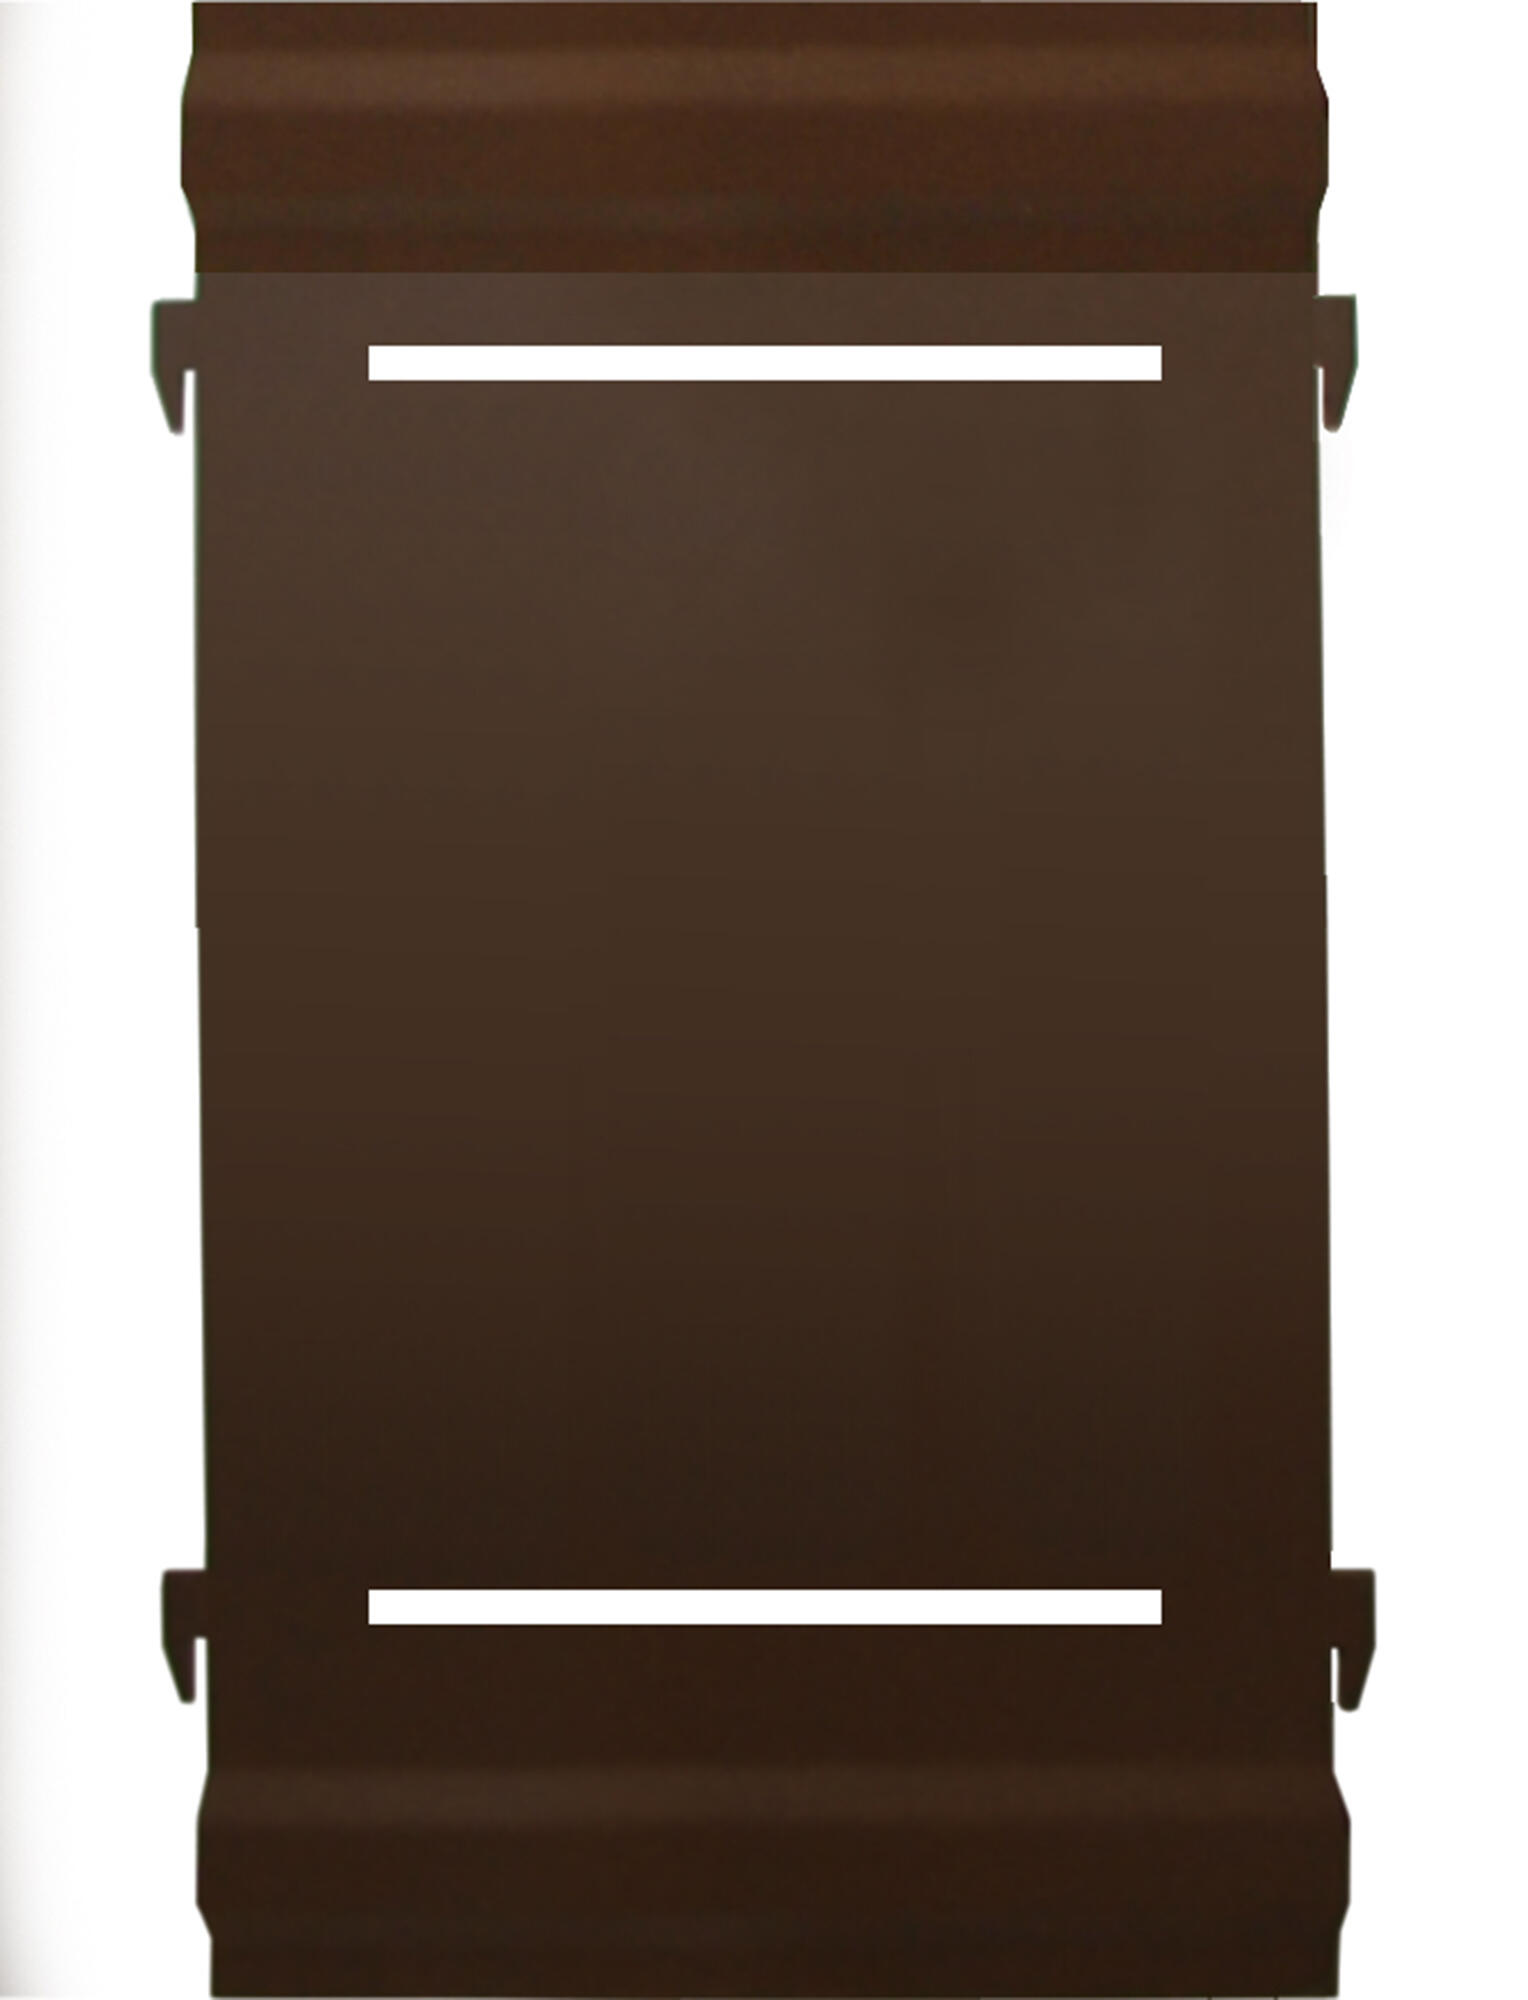 Panel remate valla acero galvanizado ciego marrón 44x20 cm